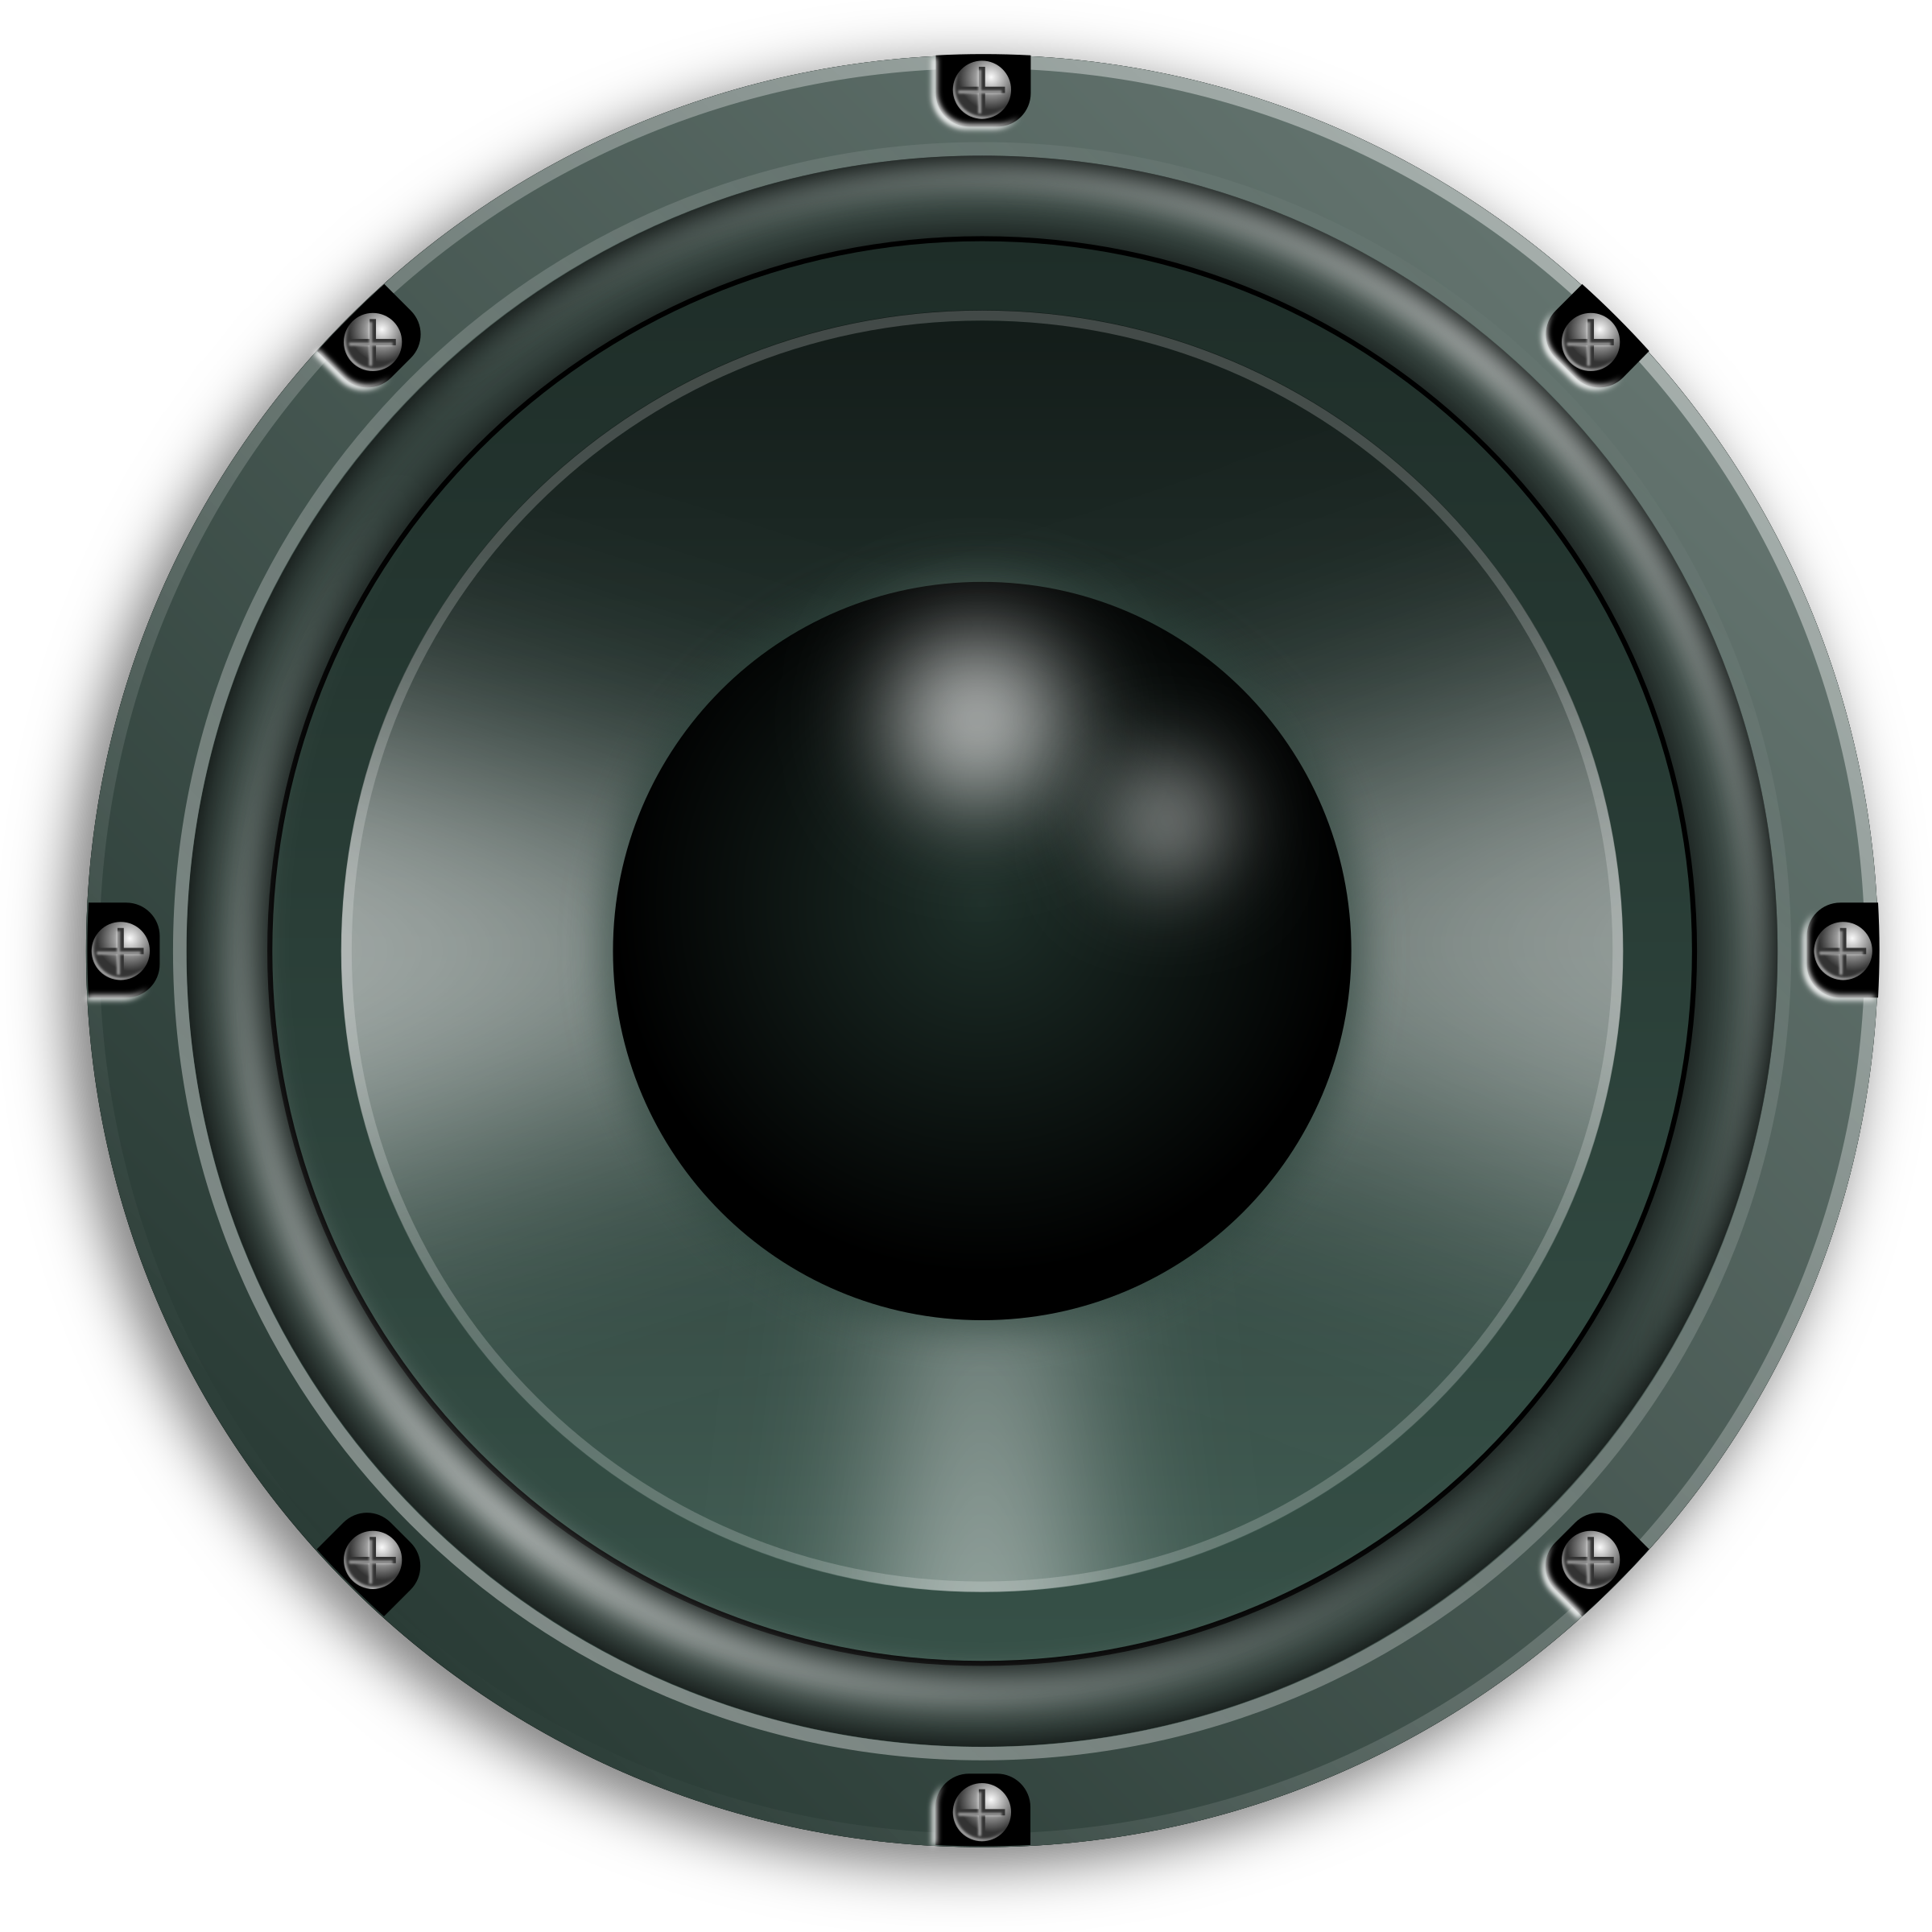 Big image png. Speakers clipart speaker system